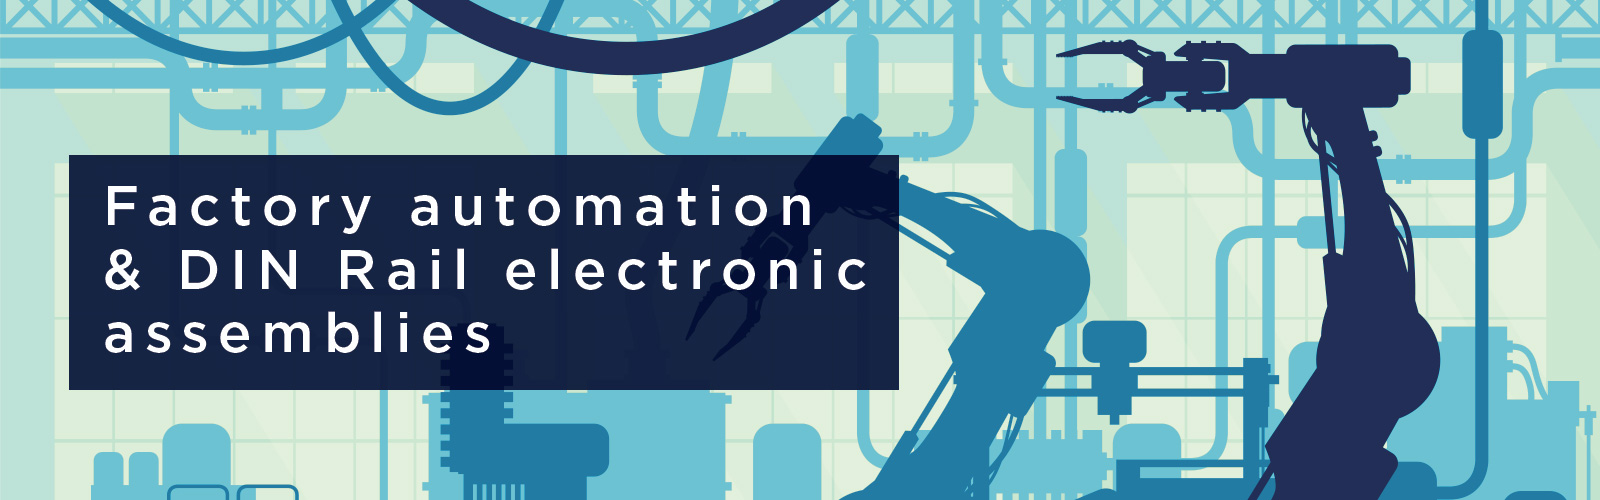 CamdenBoss Factory automation and DIN Rail electronic assemblies